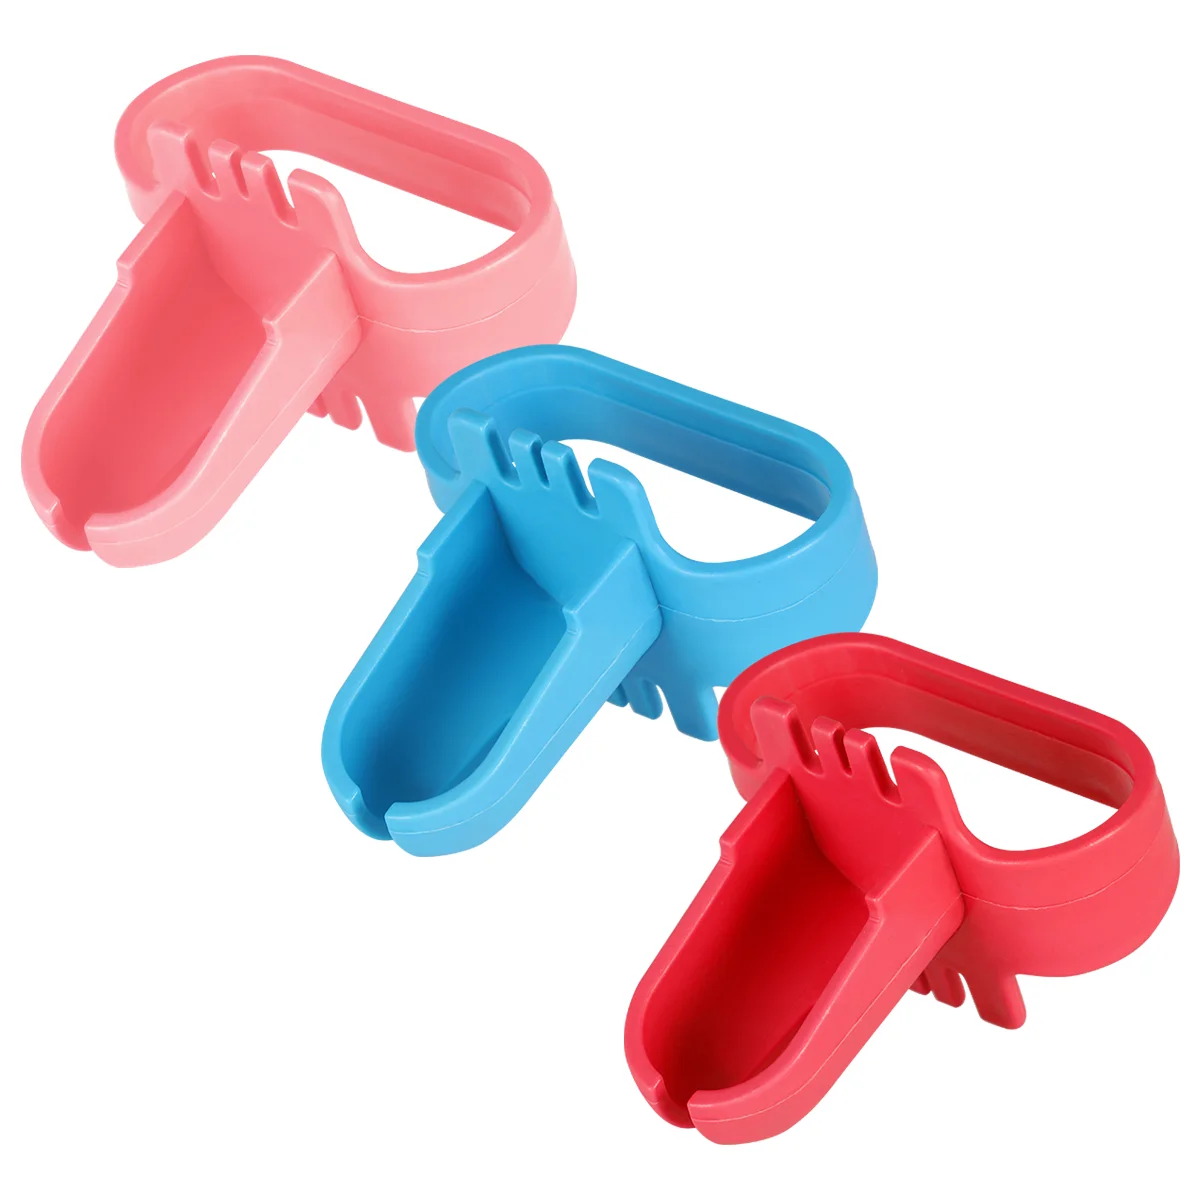 

Пластиковый Прочный красочный инструмент для завязывания воздушных шаров для детей, 3 шт.